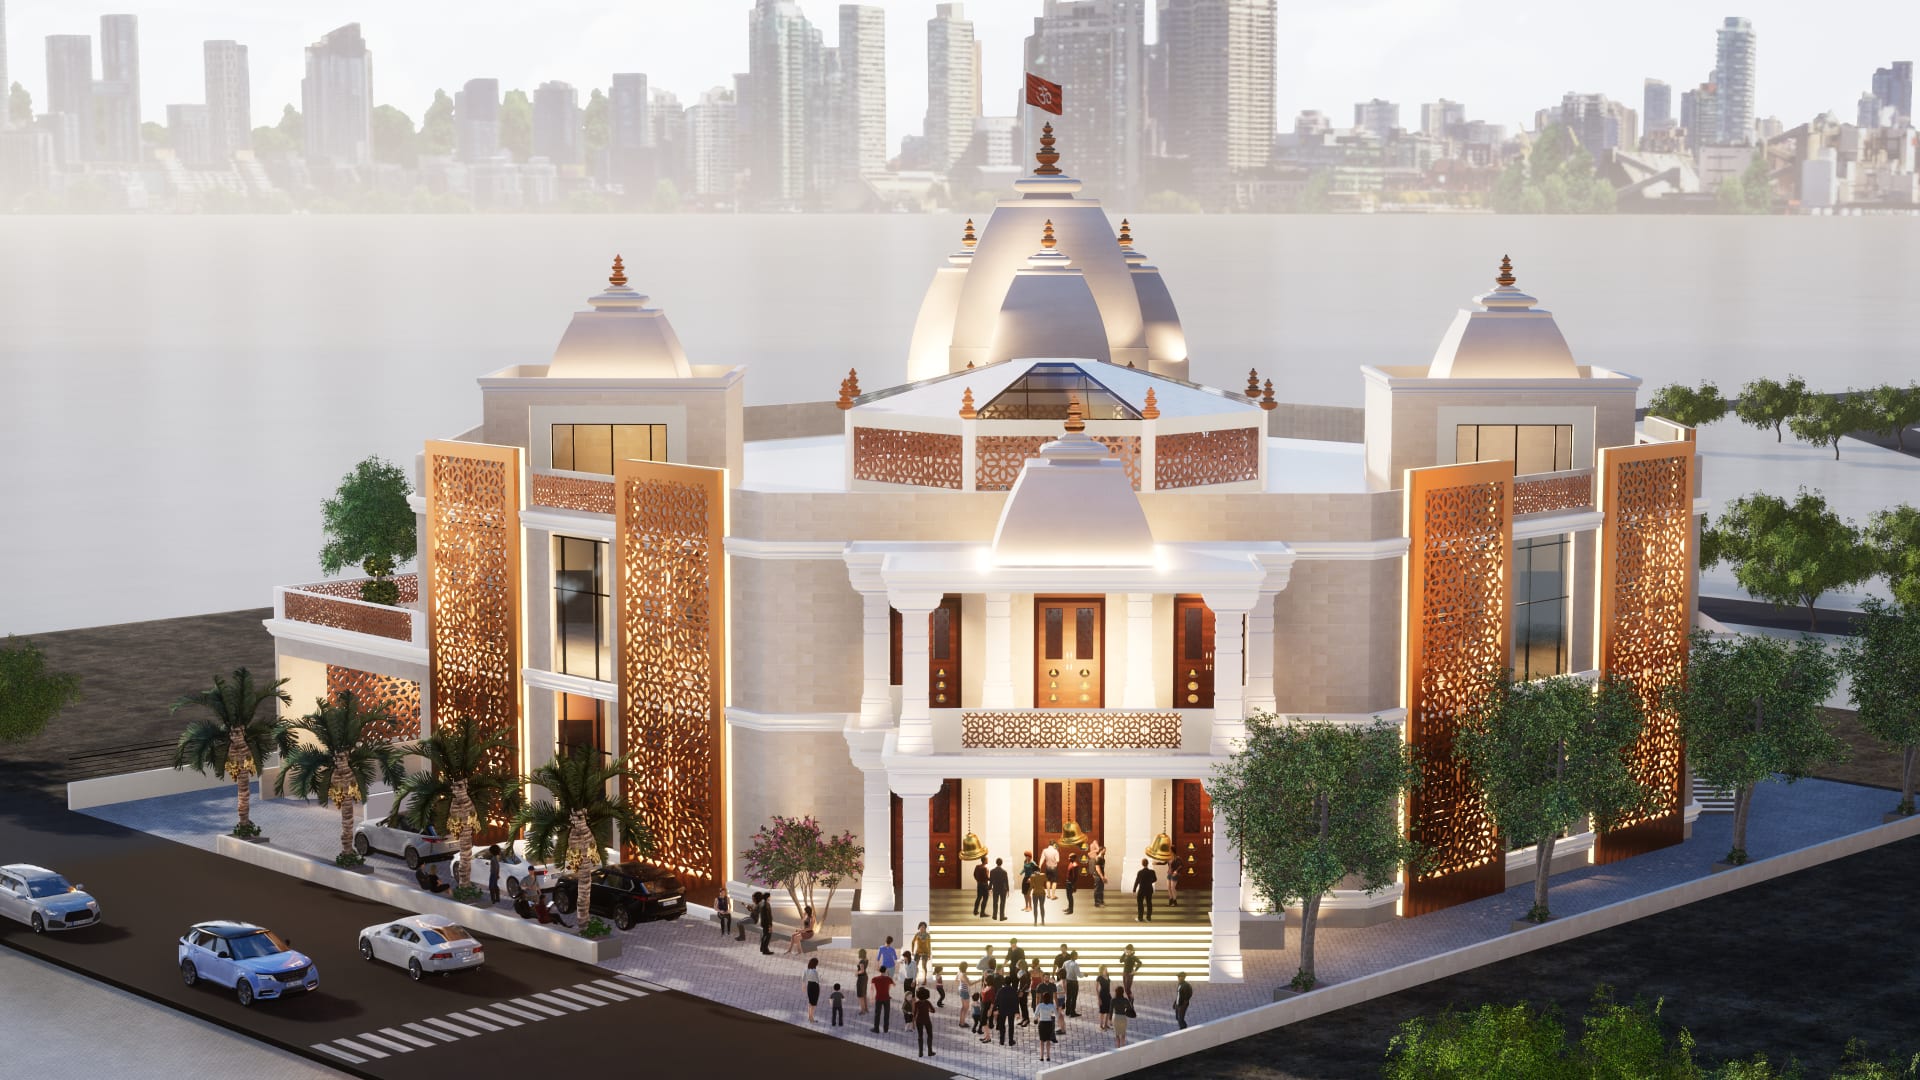 يضم 16 إلهاً وكلف 16 مليون دولار.. افتتاح معبد هندوسي ضخم في دبي